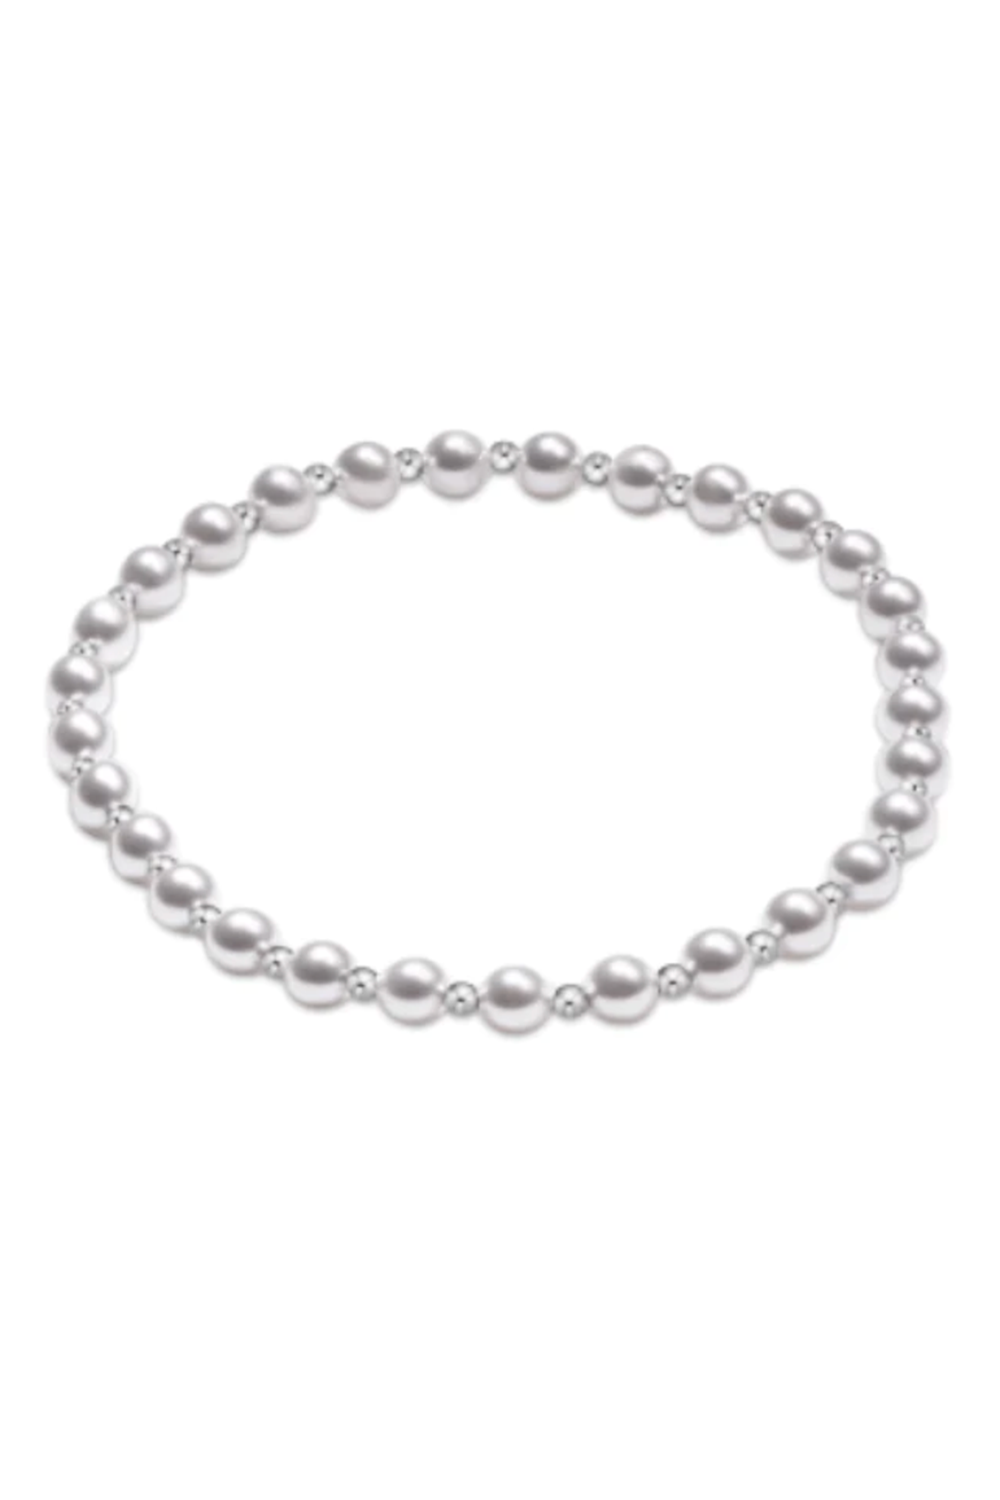 EN Grateful Pattern Bracelet - Mixed Sterling + Pearl